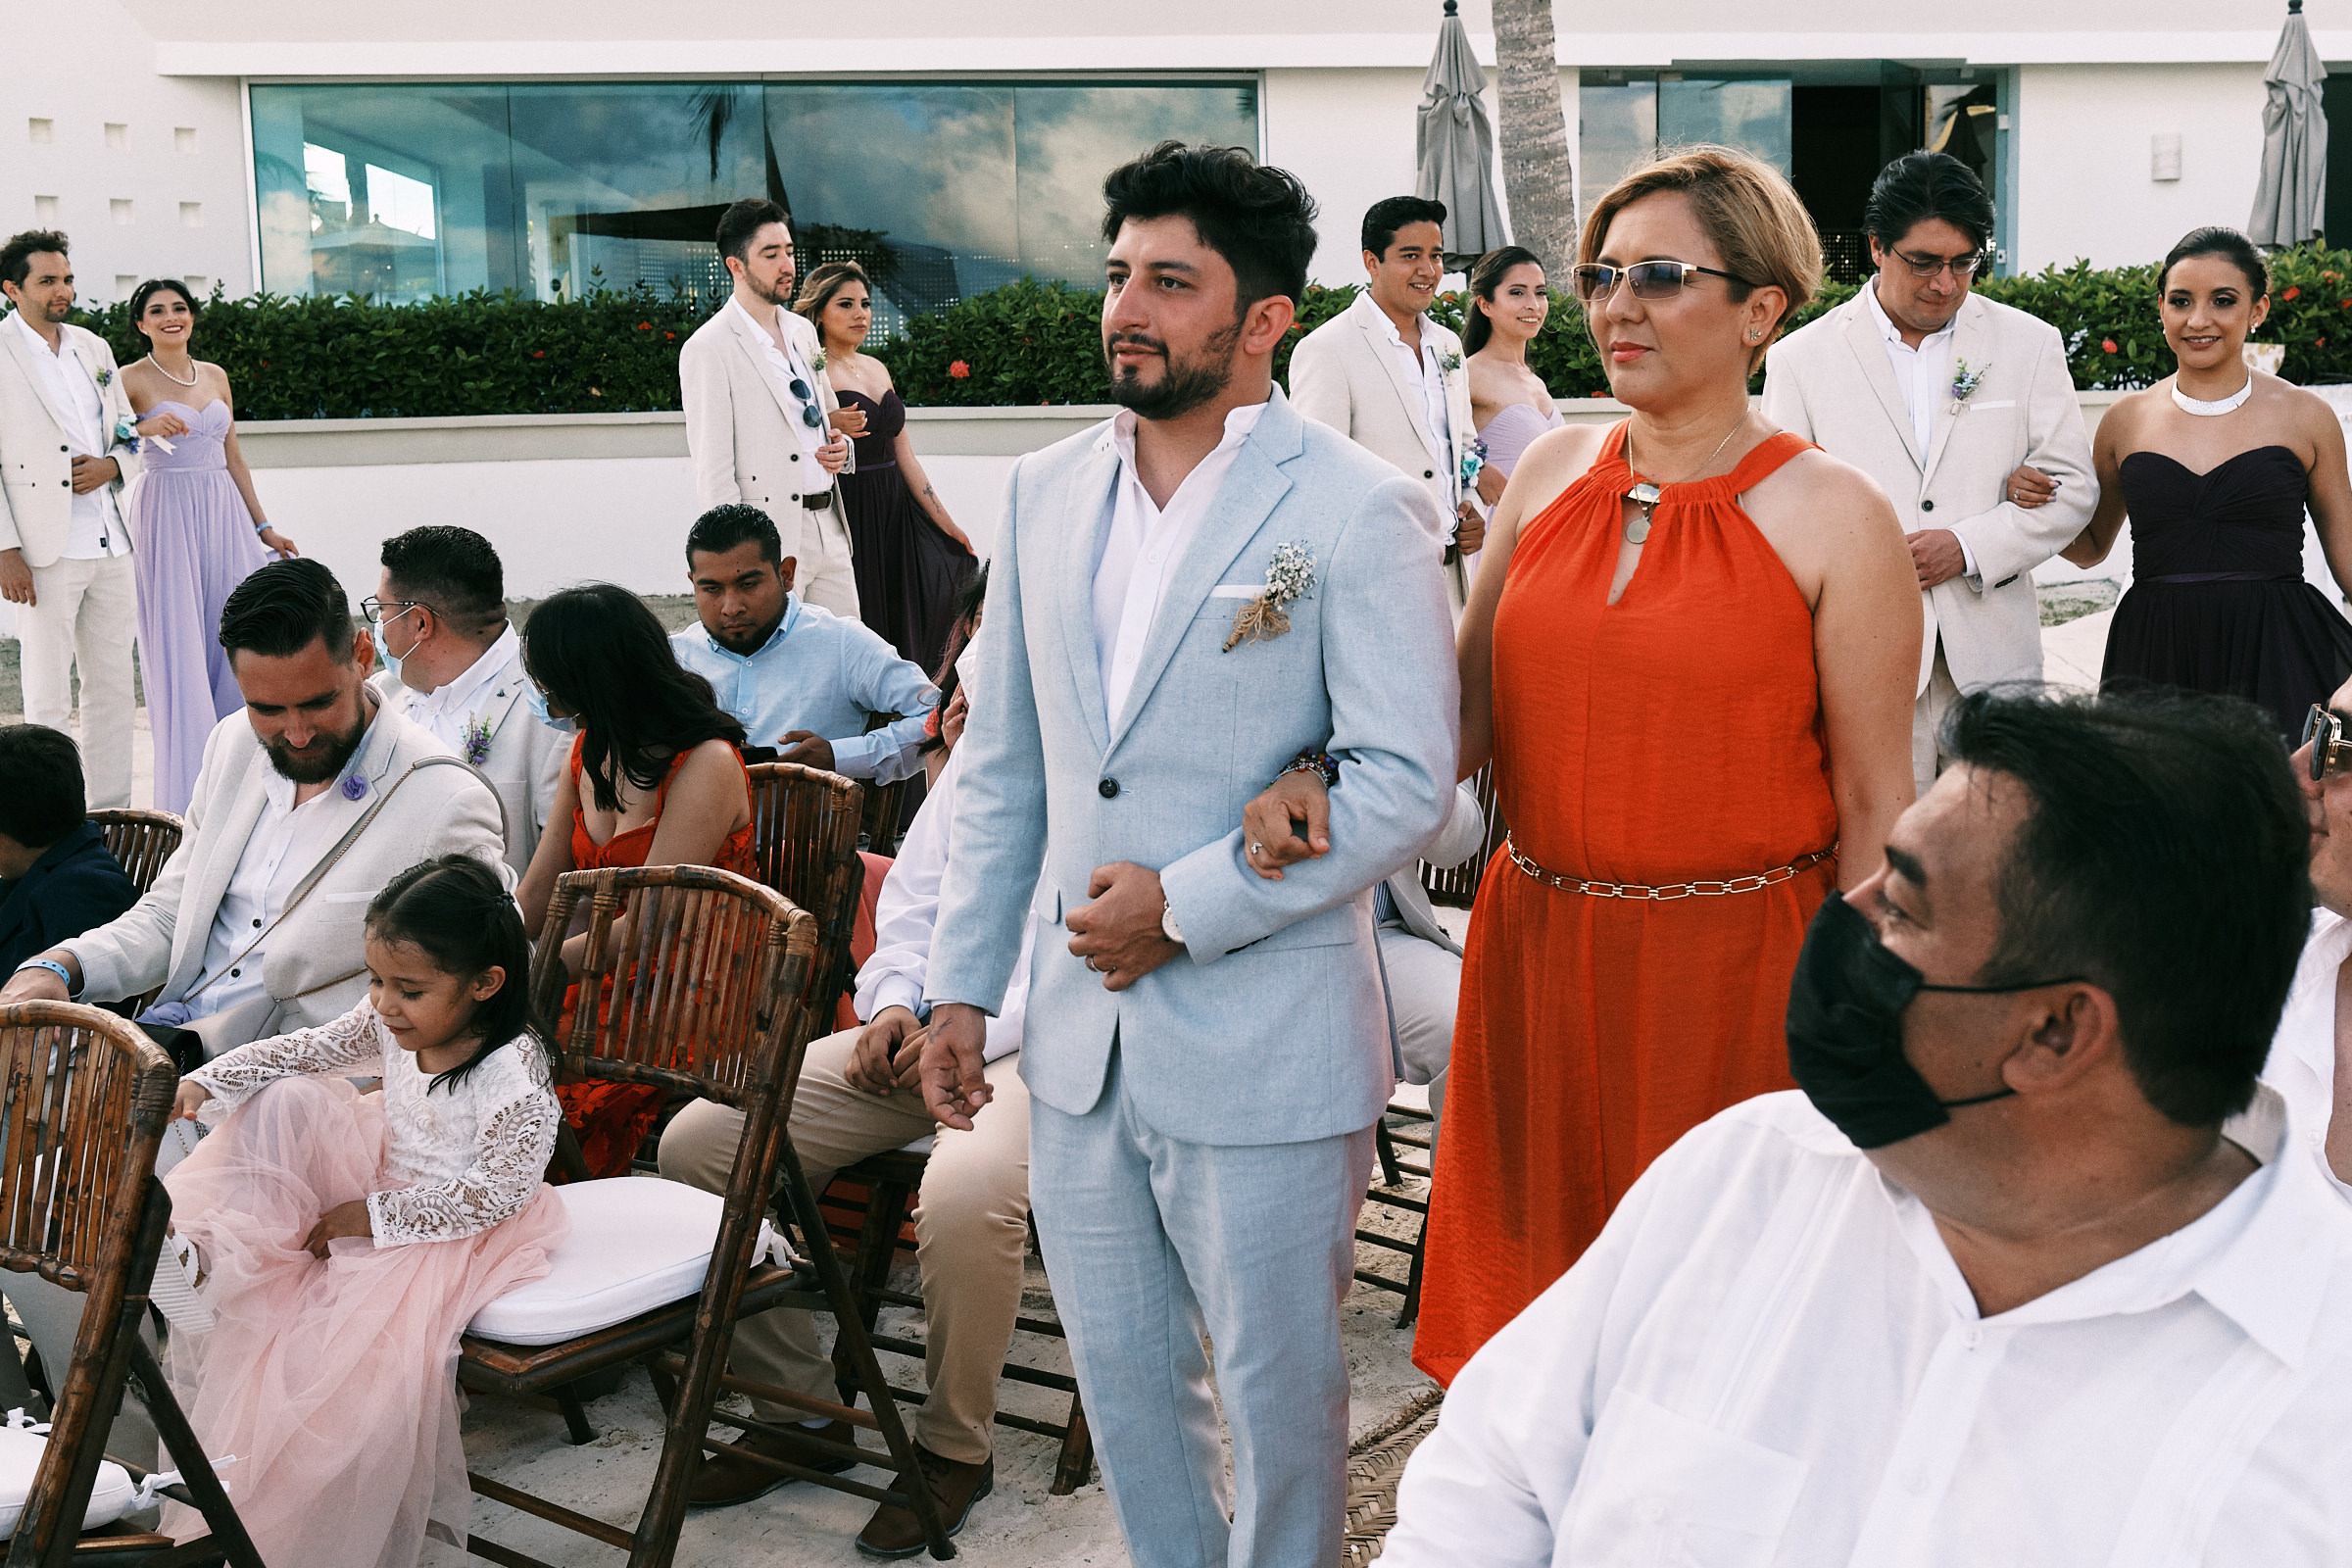 Wedding Ceremony Procession At Playa Del Carmen Mexico Bluebay Grand Esmeralda